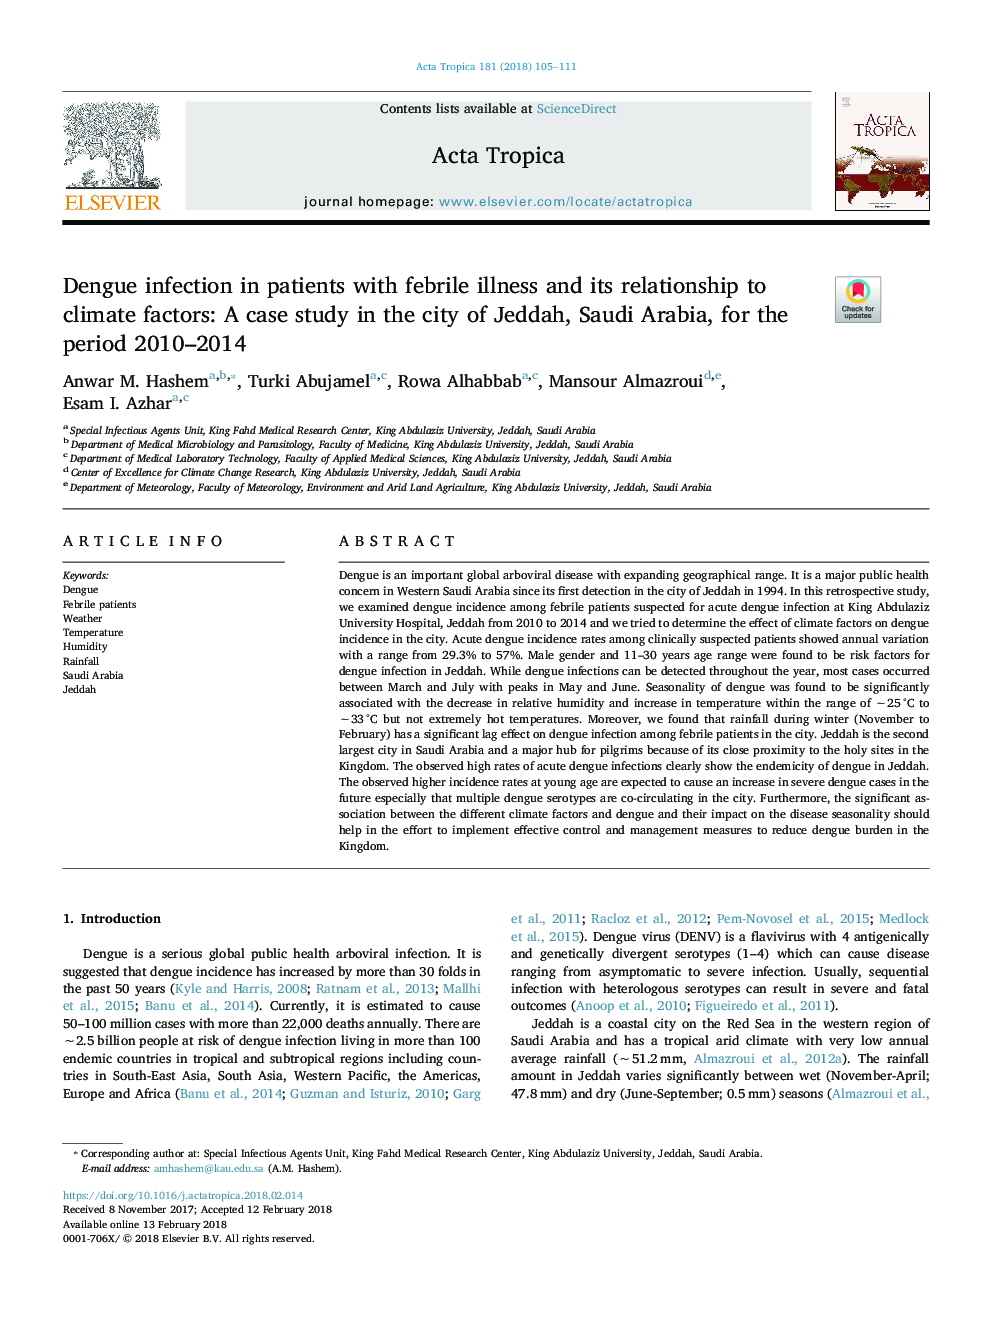 عفونت دونگ در بیماران مبتلا به بیماری تب و رابطه آن با عوامل محیطی: مطالعه موردی در شهر جده، عربستان سعودی، در دوره 2010-2014 